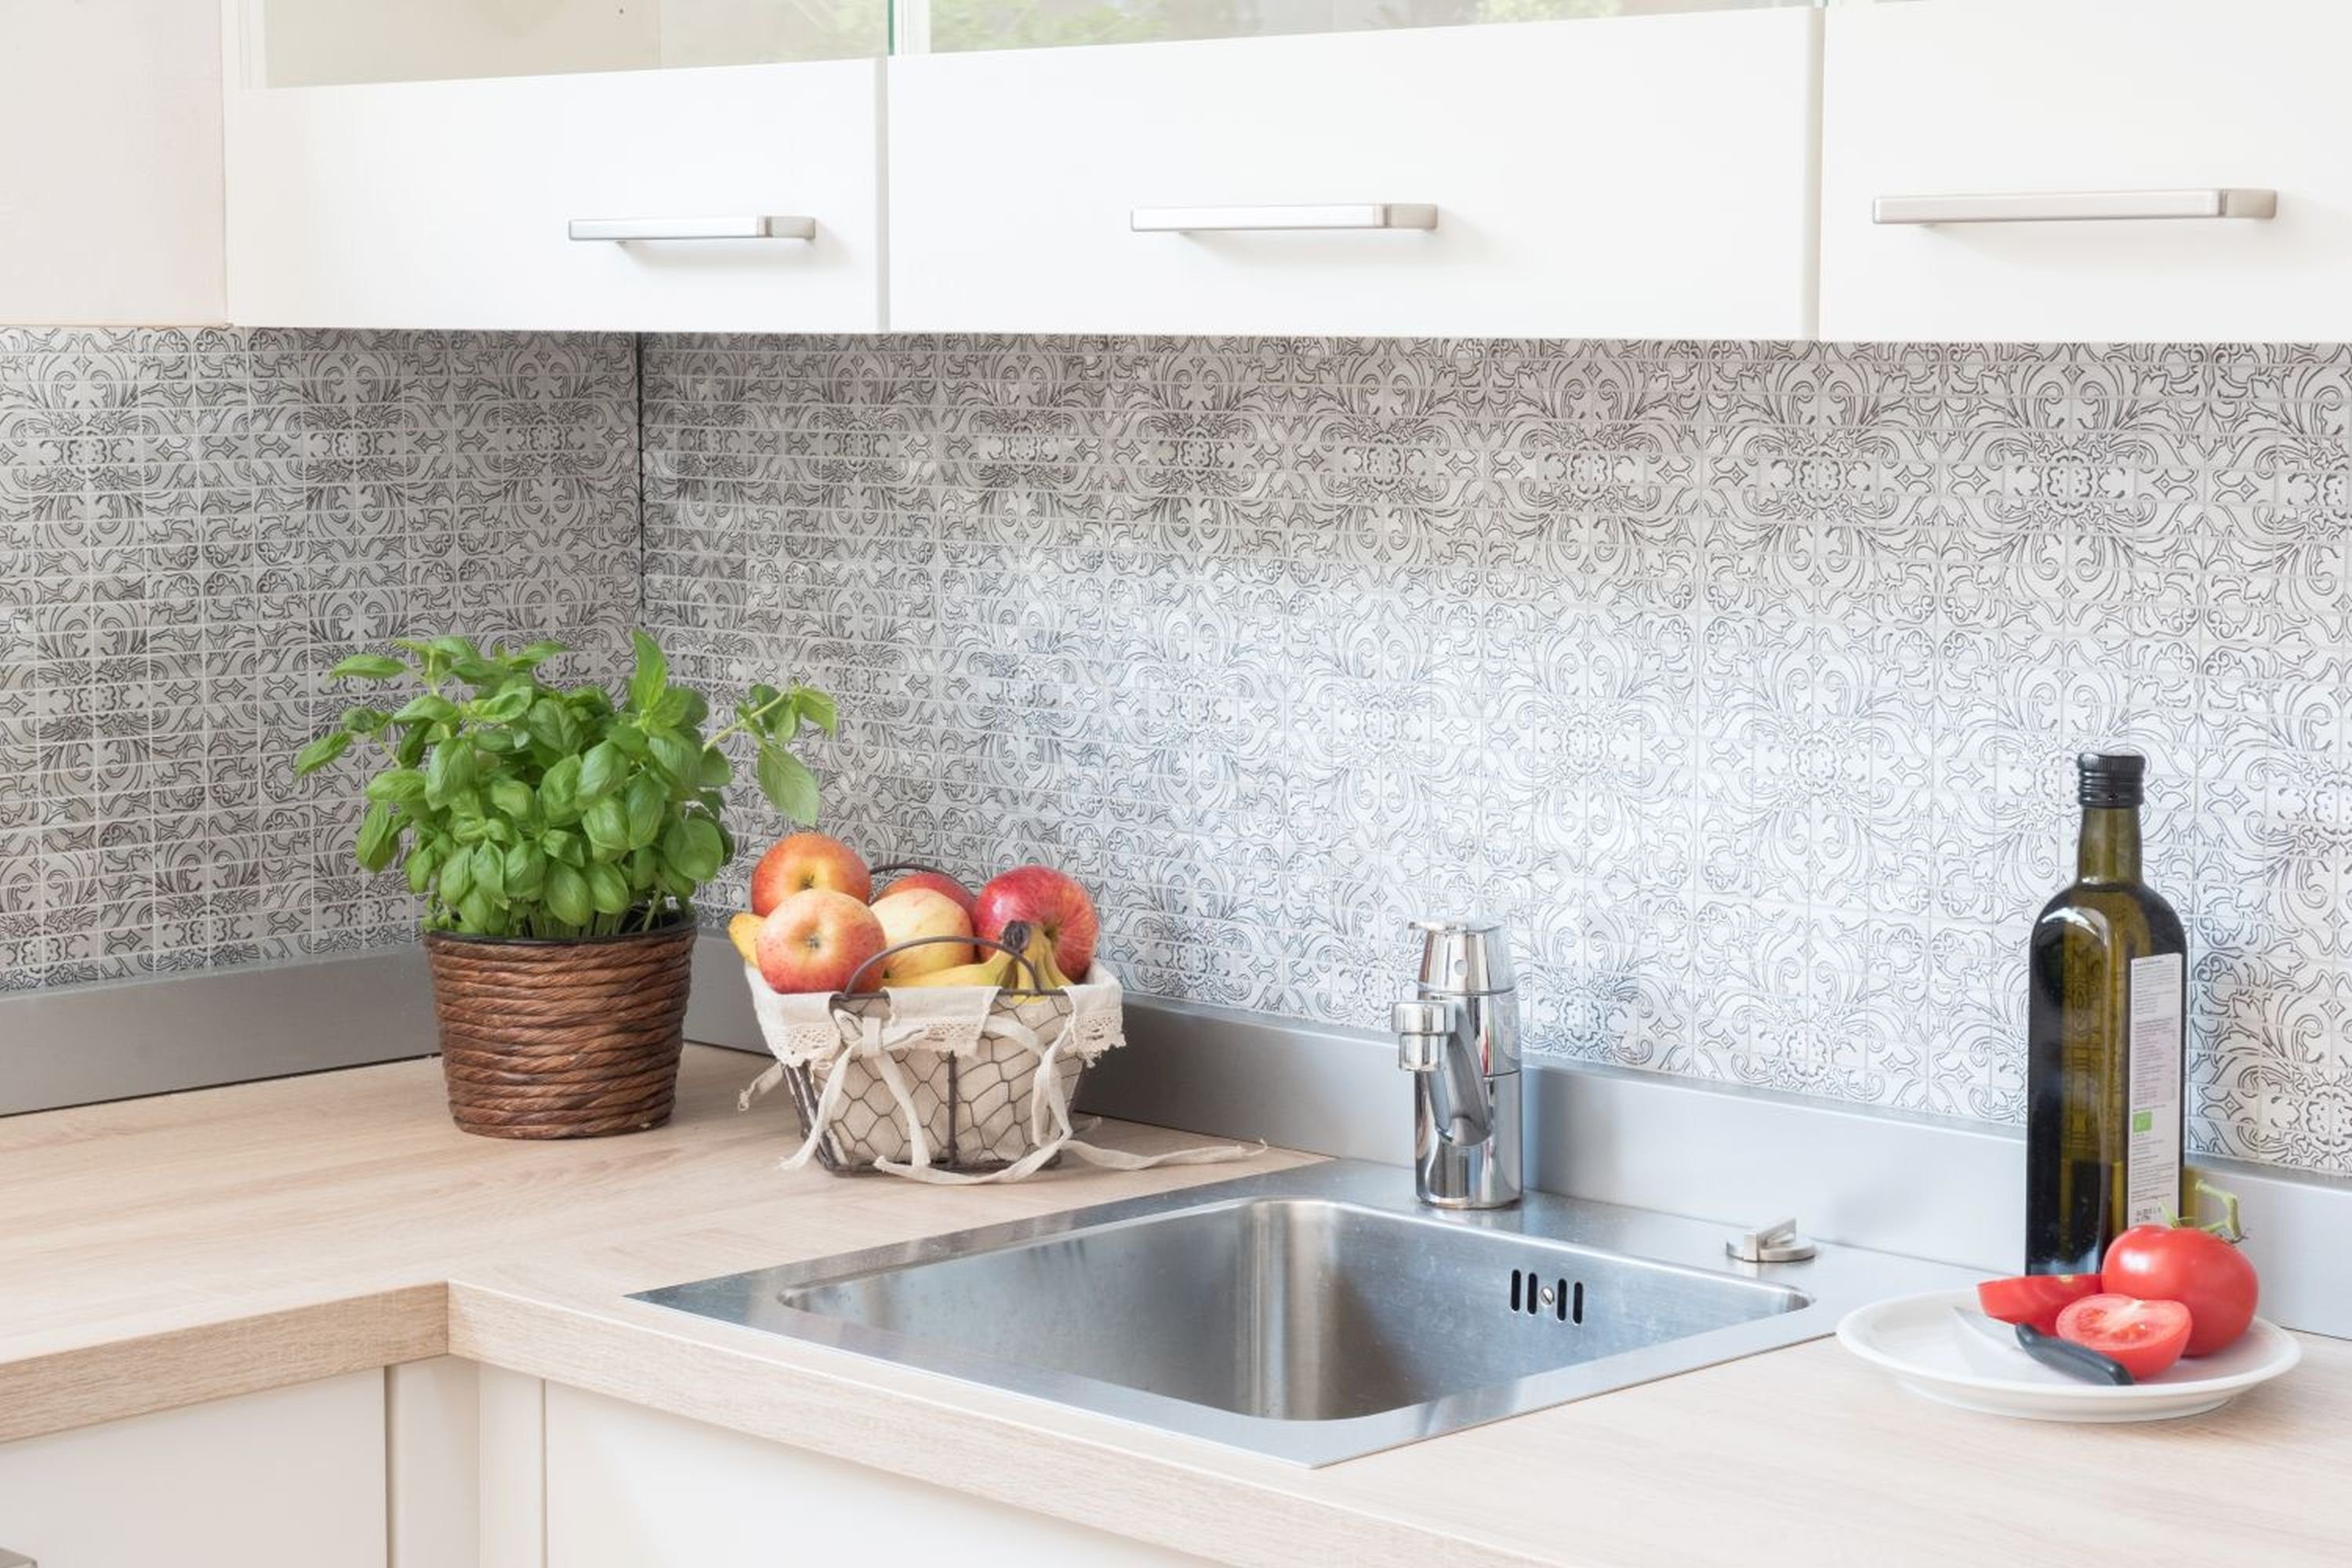 Mosani Mosaikfliesen silber Küchenrückwand Fliese Fliesenspiegel Mosaik Aluminium